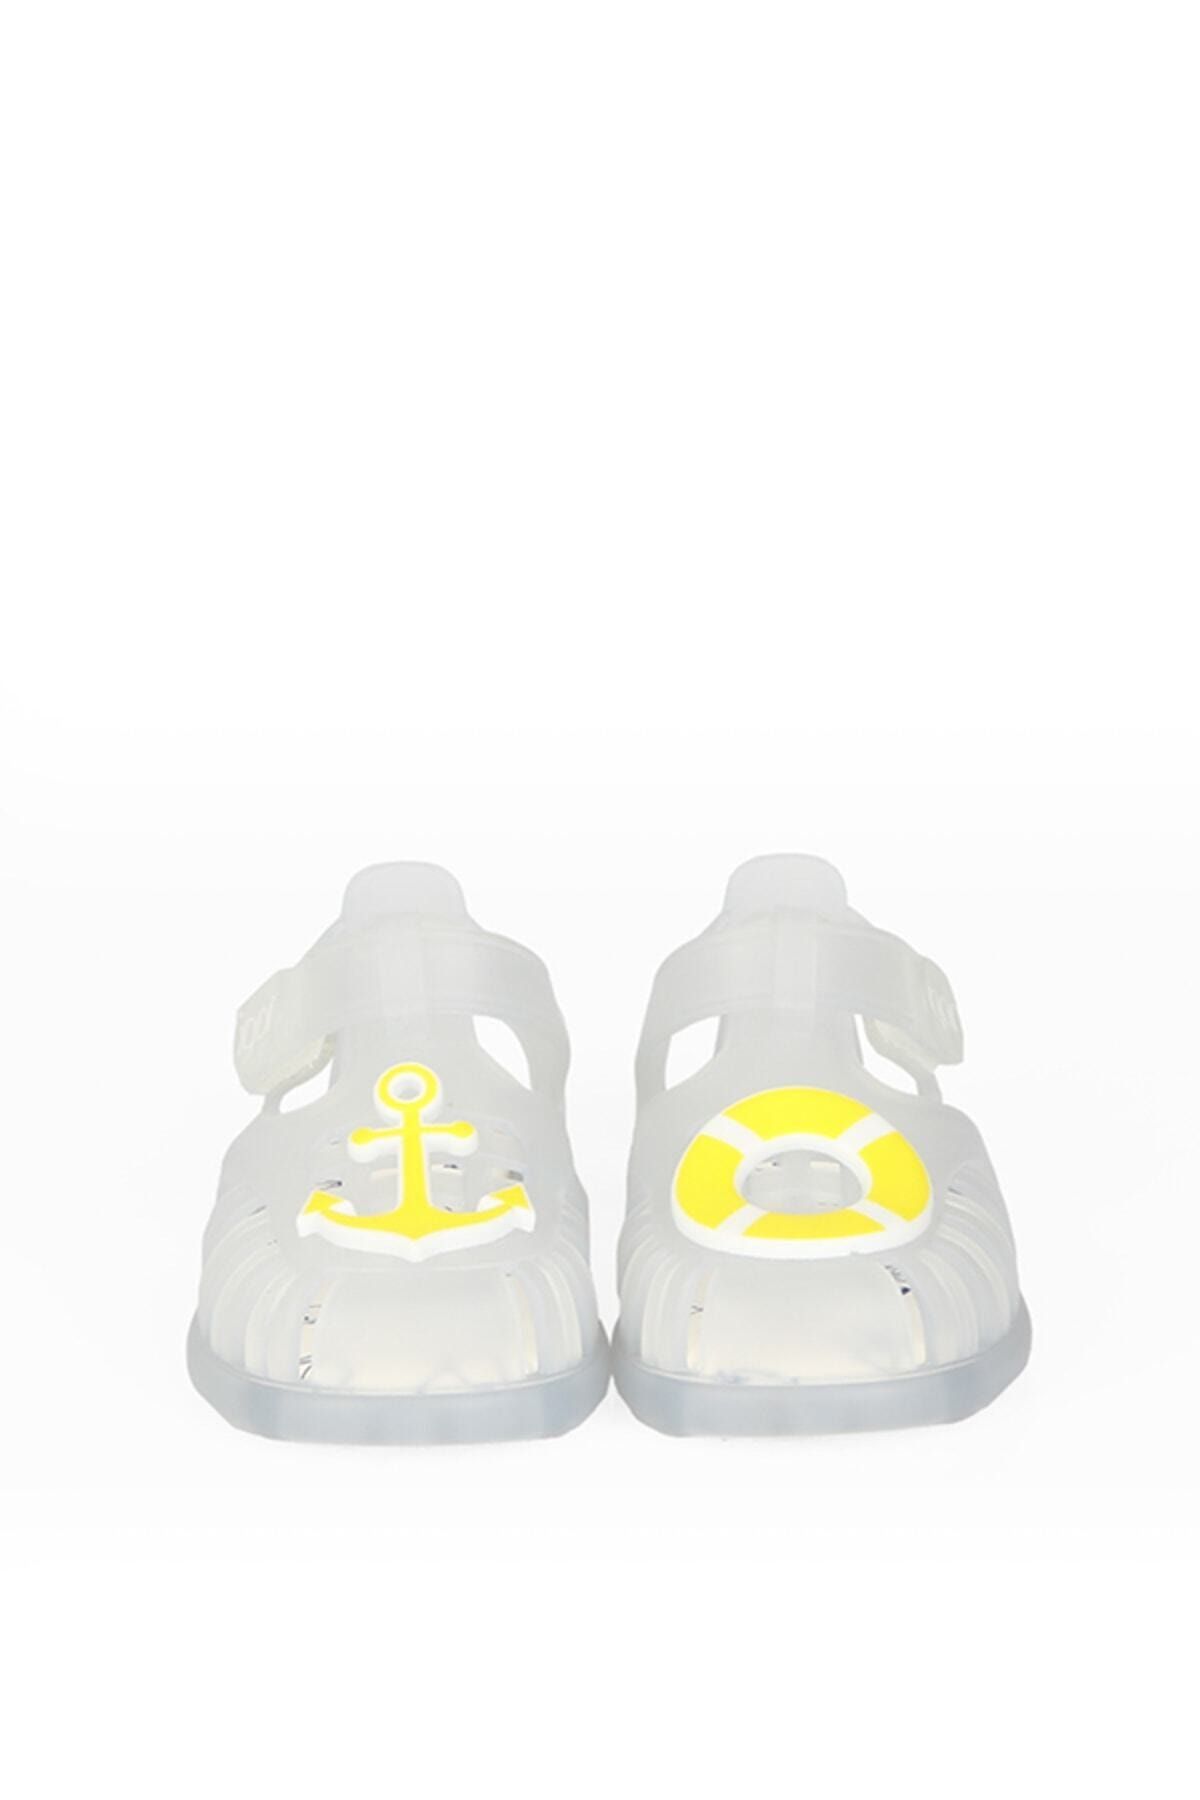 IGOR S10249 Tobby Bantlı Denizci Çocuk Beyaz Sarı Sandalet